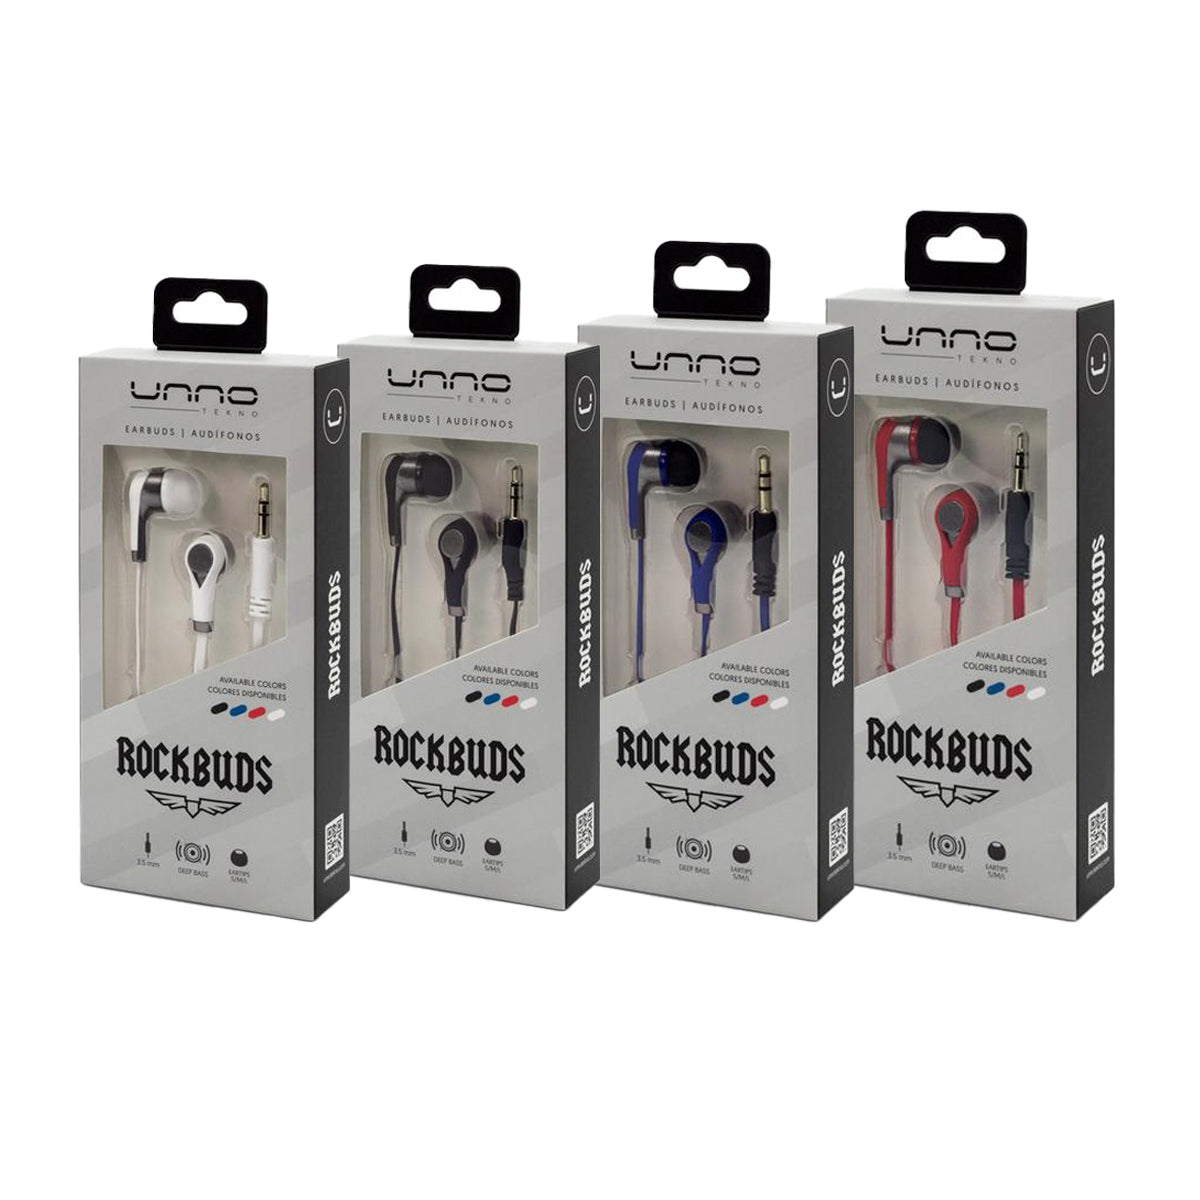 Auriculares Rockbuds 3.5mm. UNNO